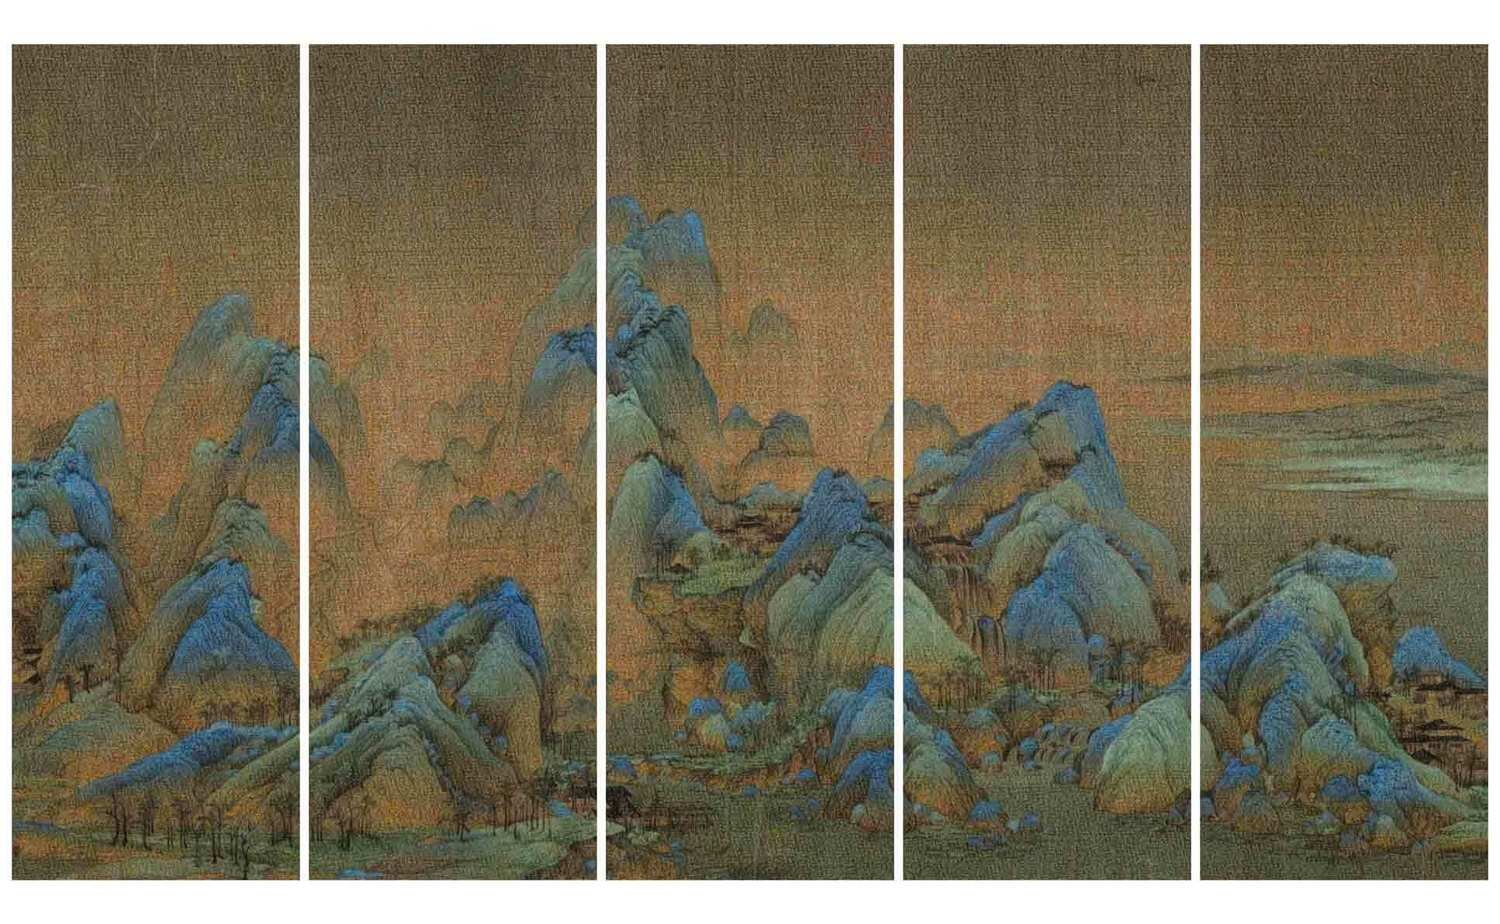   The Landscape No.1,  2014 ,  inkjet pigment print, 200 x 345 cm 